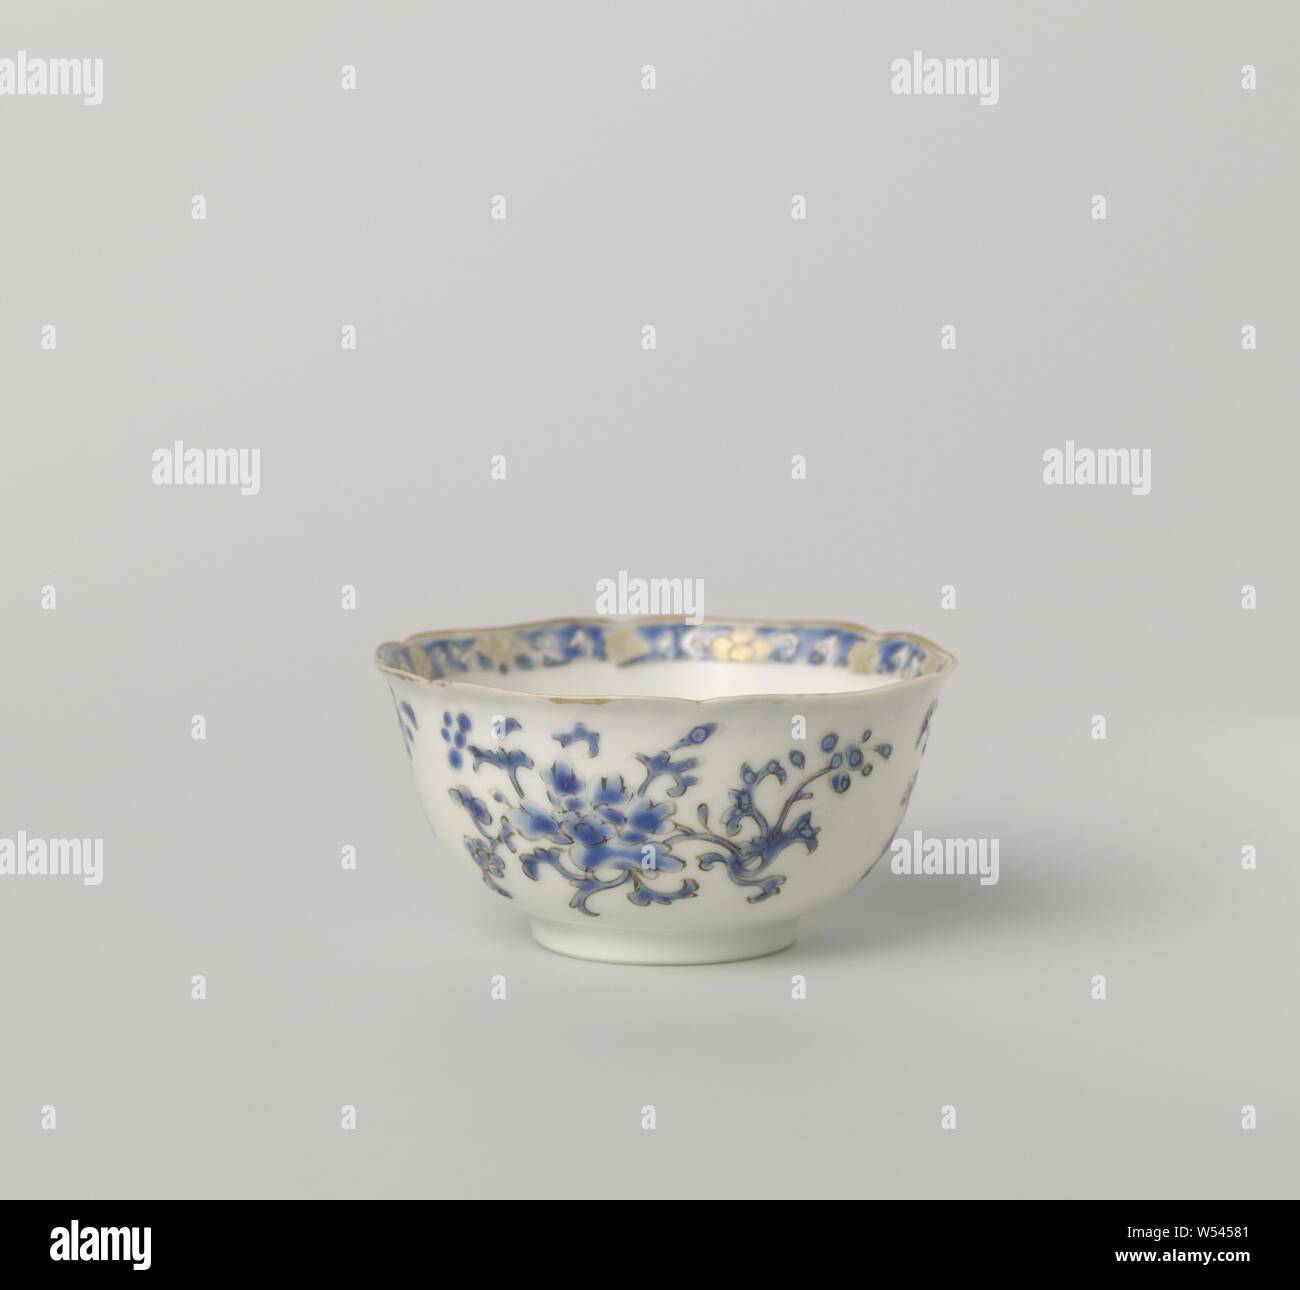 Coupe en forme de cloche avec trois groupes de fleurs en forme de cloche, de tasse de porcelaine avec bordure lobée, peinte sur l'émail en bleu, noir et or. Une rosace de fleurs avec trois groupes de vignes de fleurs autour d'elle, la frontière avec une bande d'émail bleu fleur de vigne. Avec l'émail de porcelaine couleurs., anonyme, la Chine, l'c. 1725 - c. 1749, dynastie Qing-(1644-1912) / Yongzheng-période (1723-1735) / période de Qianlong (1736-1795), Porcelaine, glaçure (matériel), de l'or (métal), la vitrification, H 3,2 cm d 6,5 cm d 2,9 cm Banque D'Images